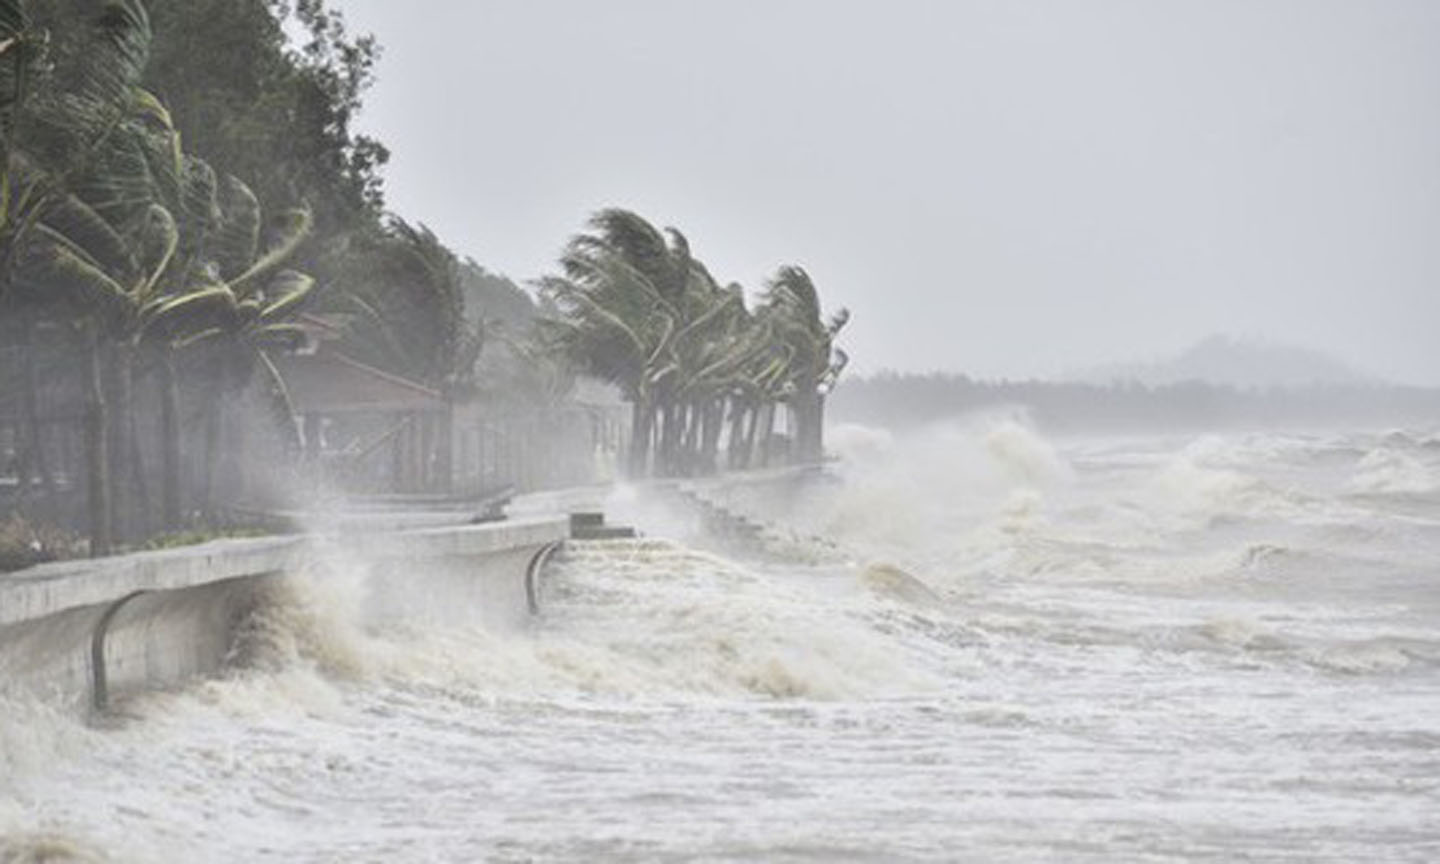 Dự báo ngày 18-9, bão sẽ ảnh hưởng trực tiếp đến khu vực ven biển các tỉnh từ Hà Tĩnh đến Quảng Ngãi, vùng tâm bão có khả năng đổ bộ vào đất liền các tỉnh từ Quảng Bình đến Đà Nẵng